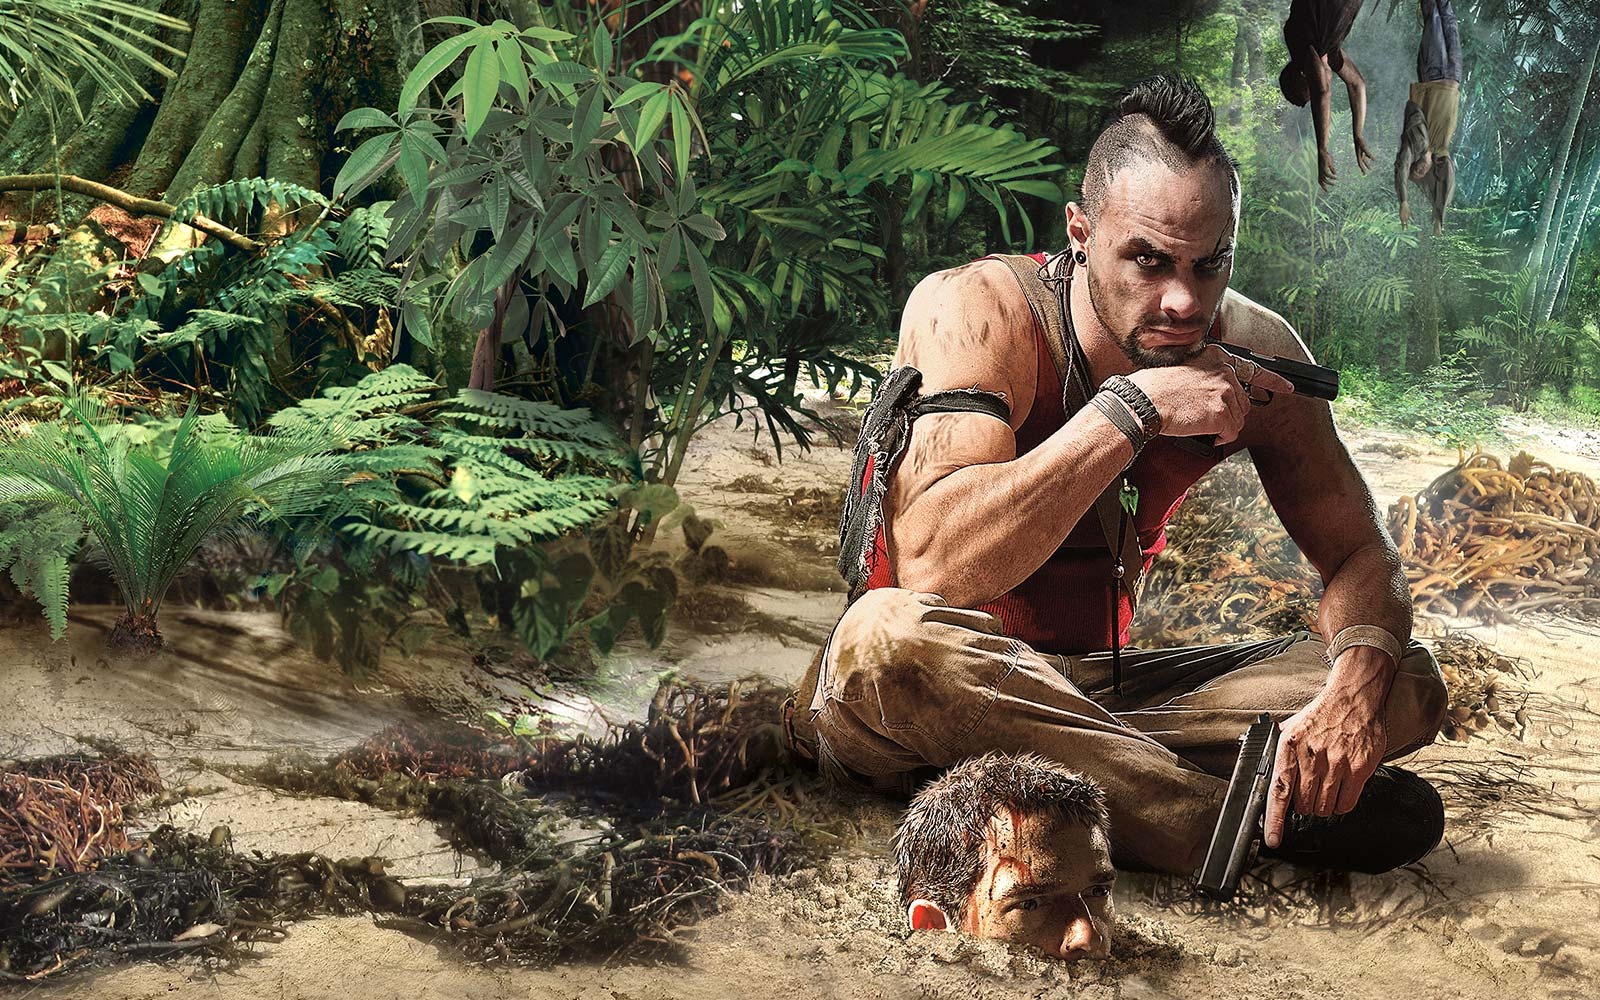 Far Cry: Todos os jogos do pior ao melhor, segundo a crítica